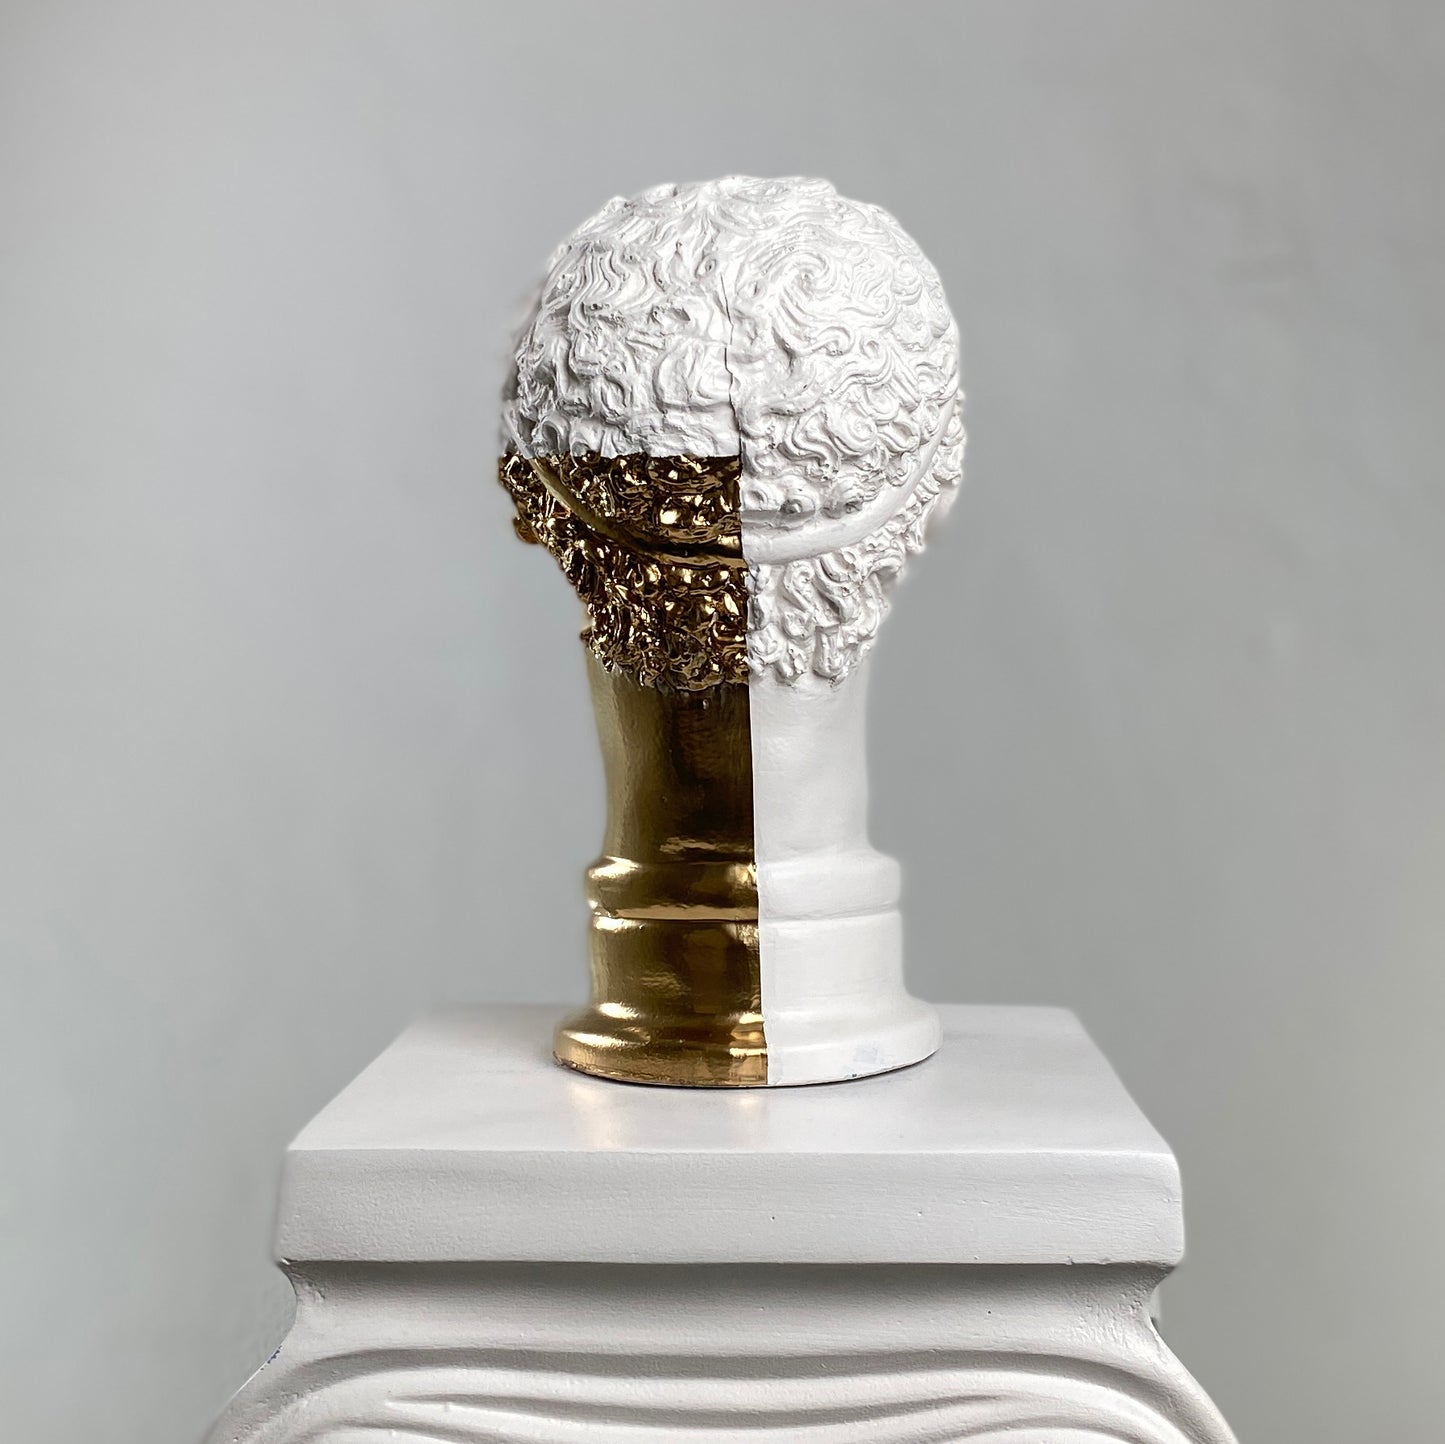 Hermes 'Gold Mail' Pop Art Sculpture, Modern Home Decor